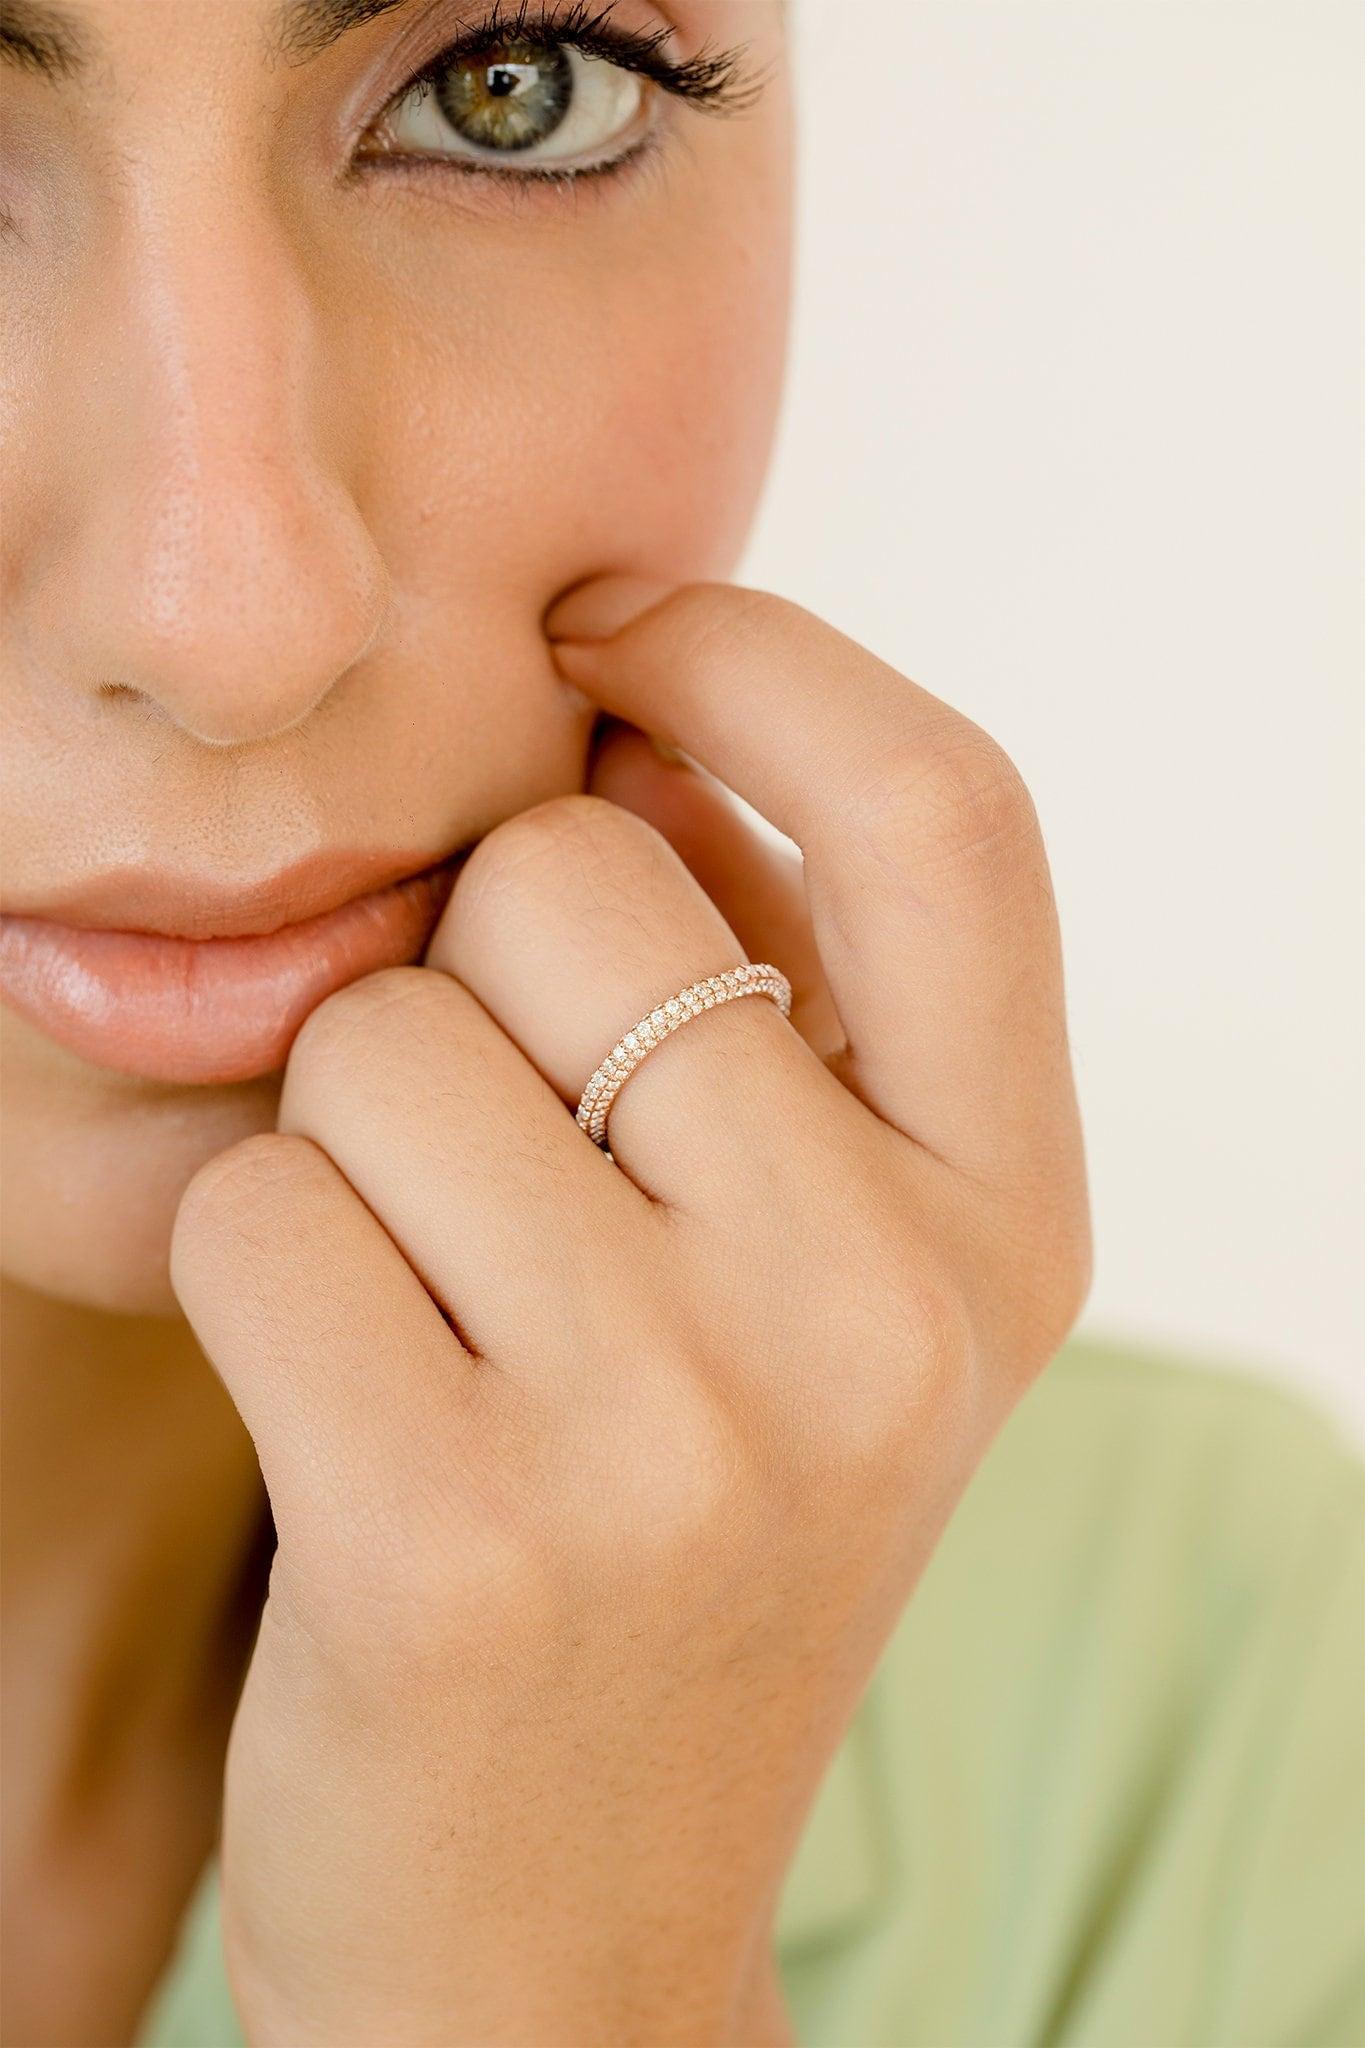 Handmade Rose Gold Ring, Elegant Yellow/white Gold Ring, Natural Gold Fashion Ring - GeumJewels